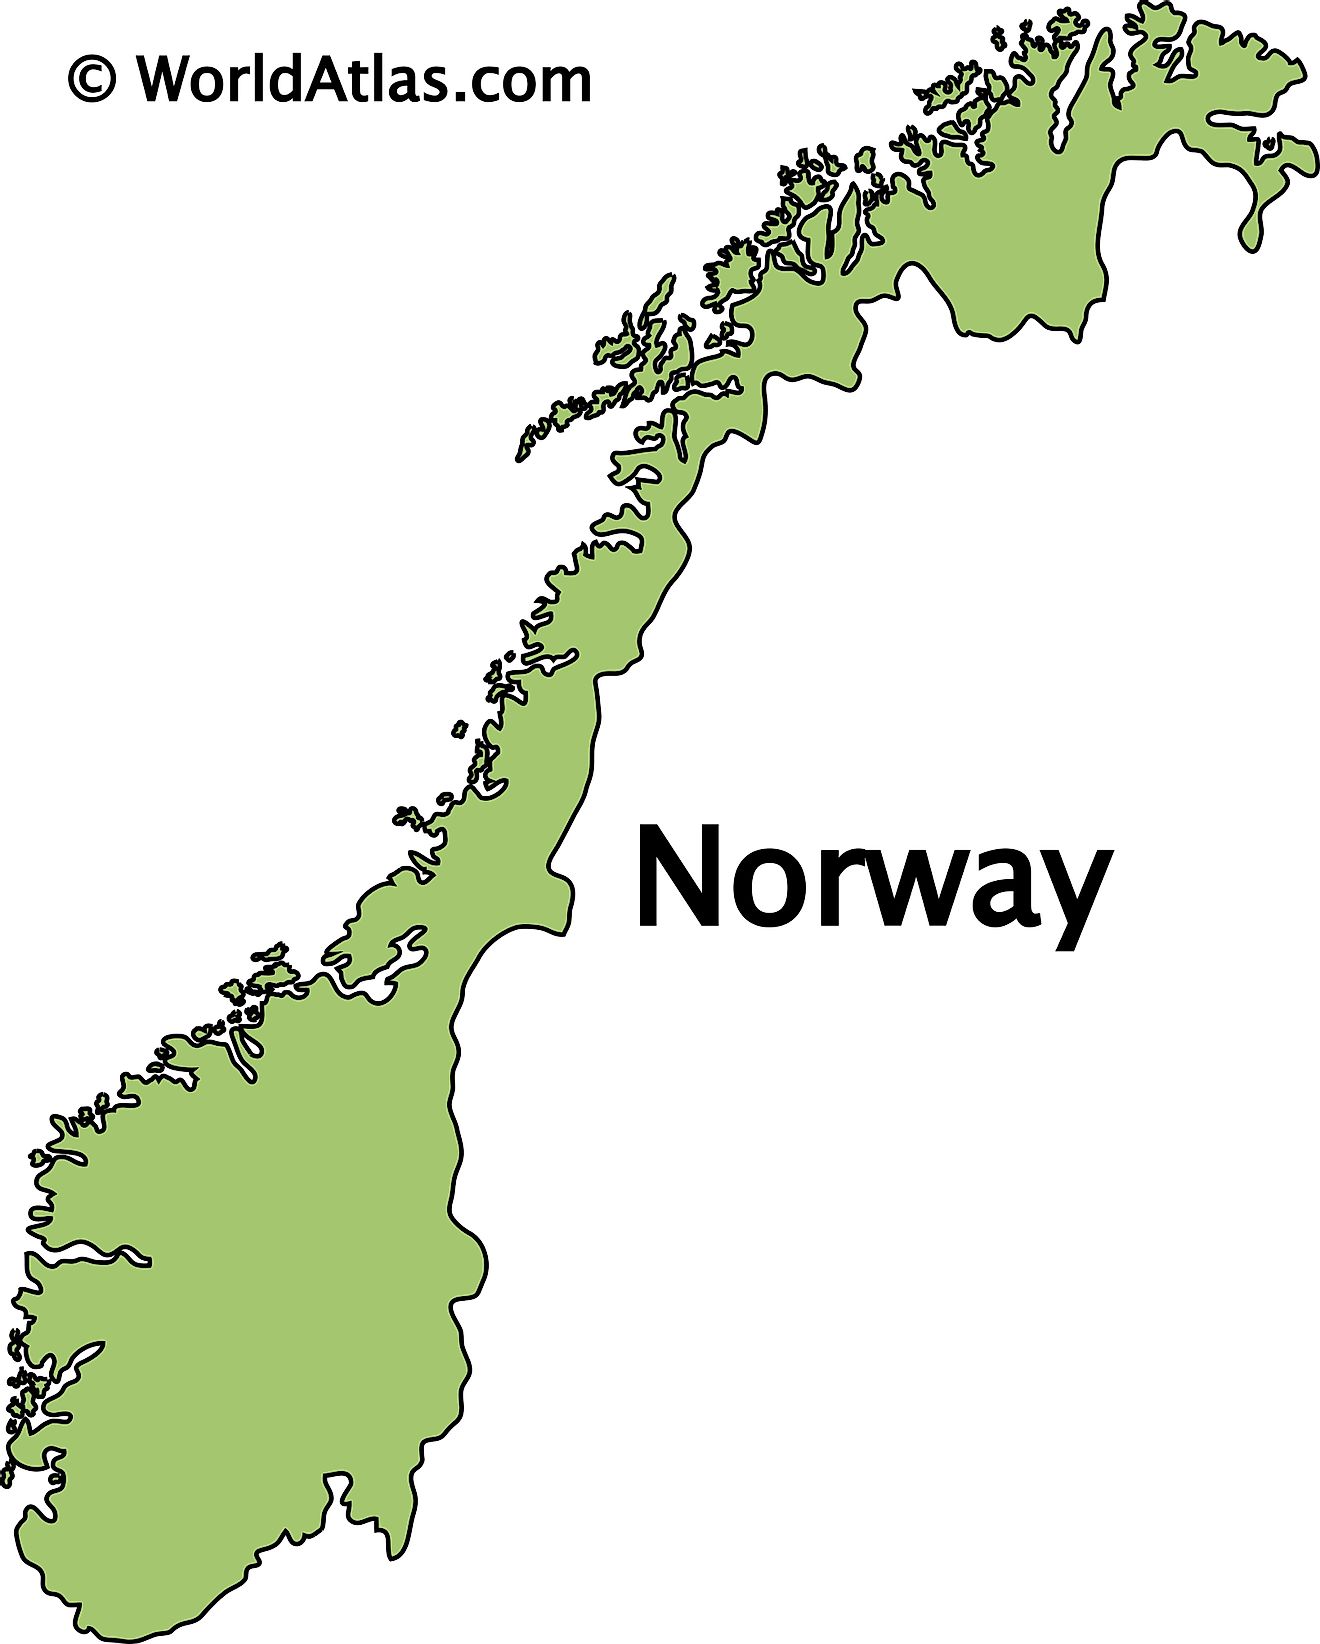 Mapa de contorno de Noruega